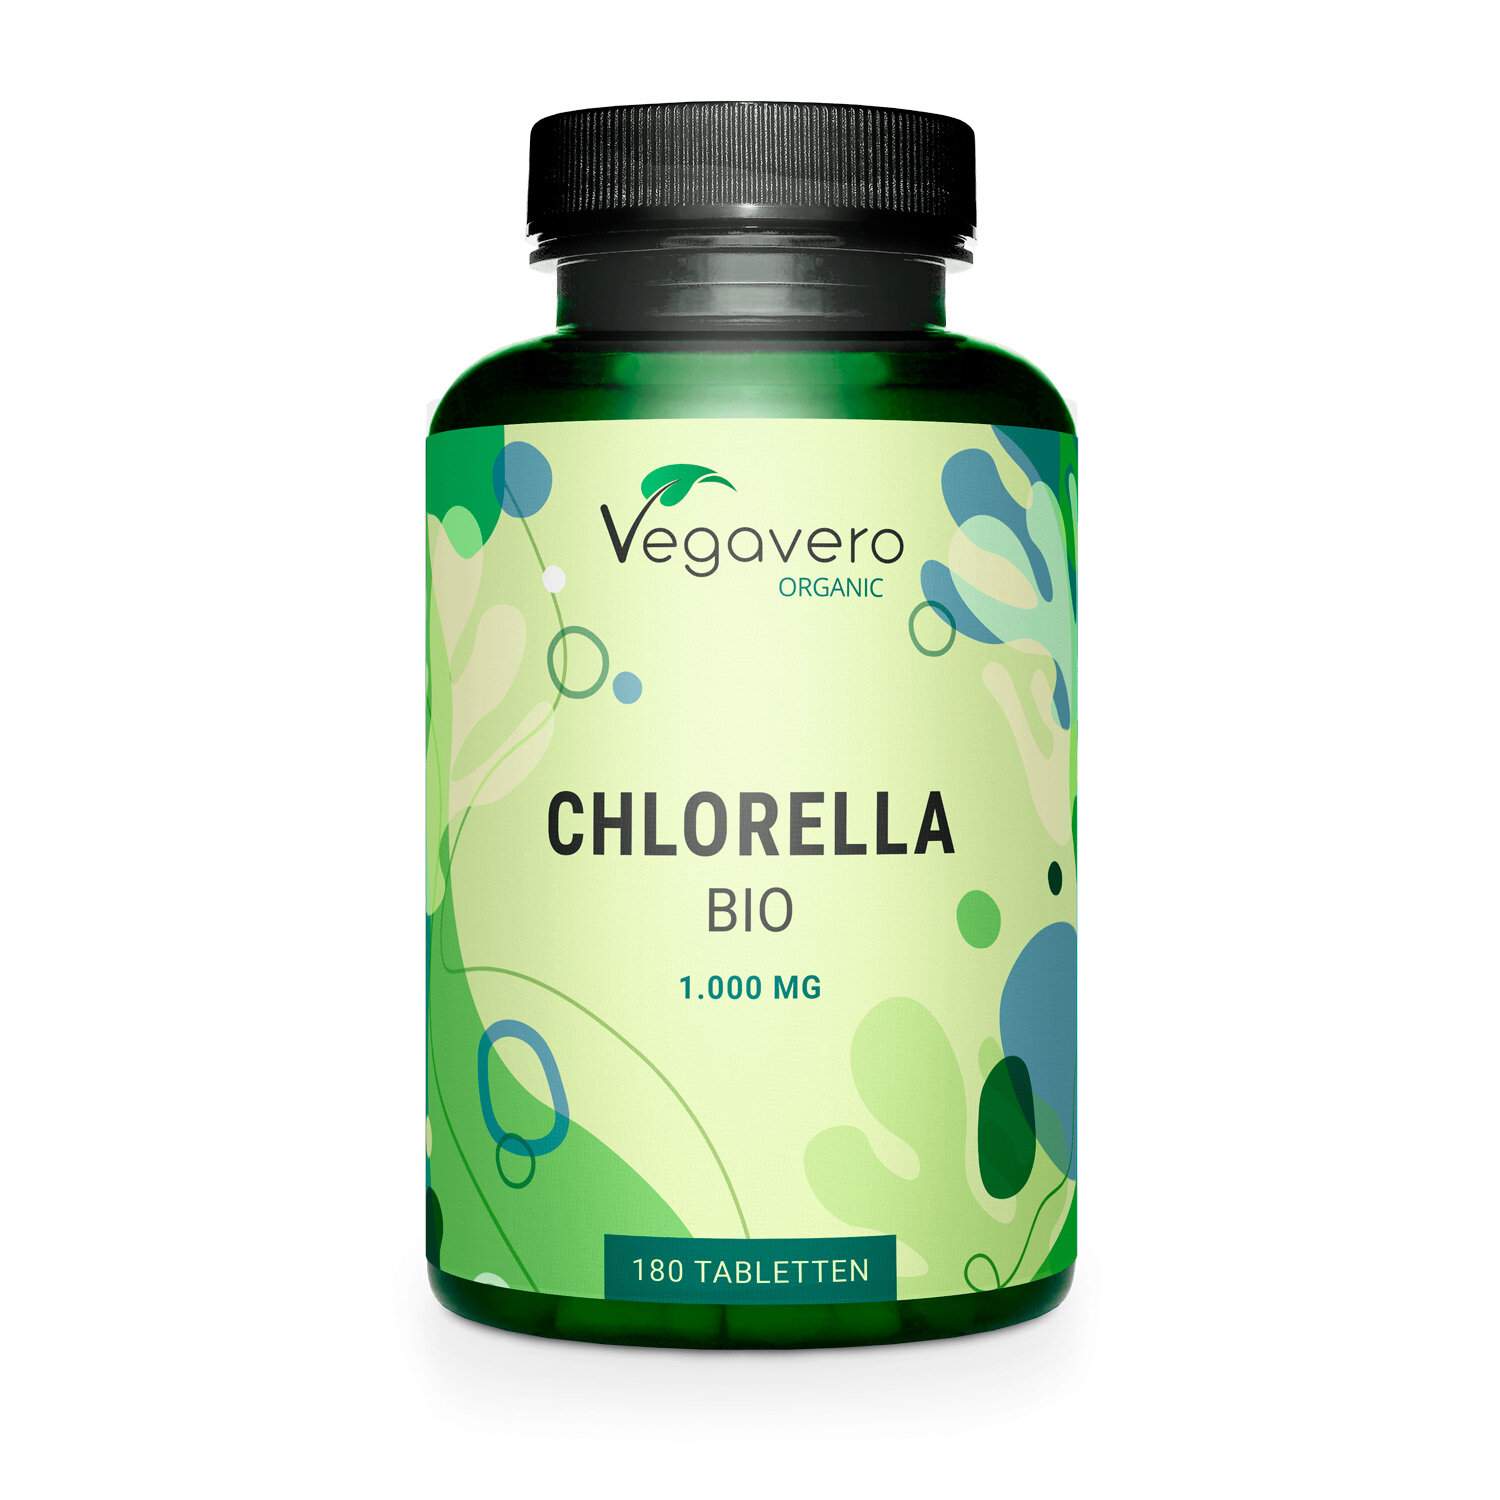 Vegavero Chlorella BIO | 180 Tabletten | Reines Bio Chlorella Pulver | Hochdosiert für optimale Nährstoffversorgung | Vegan